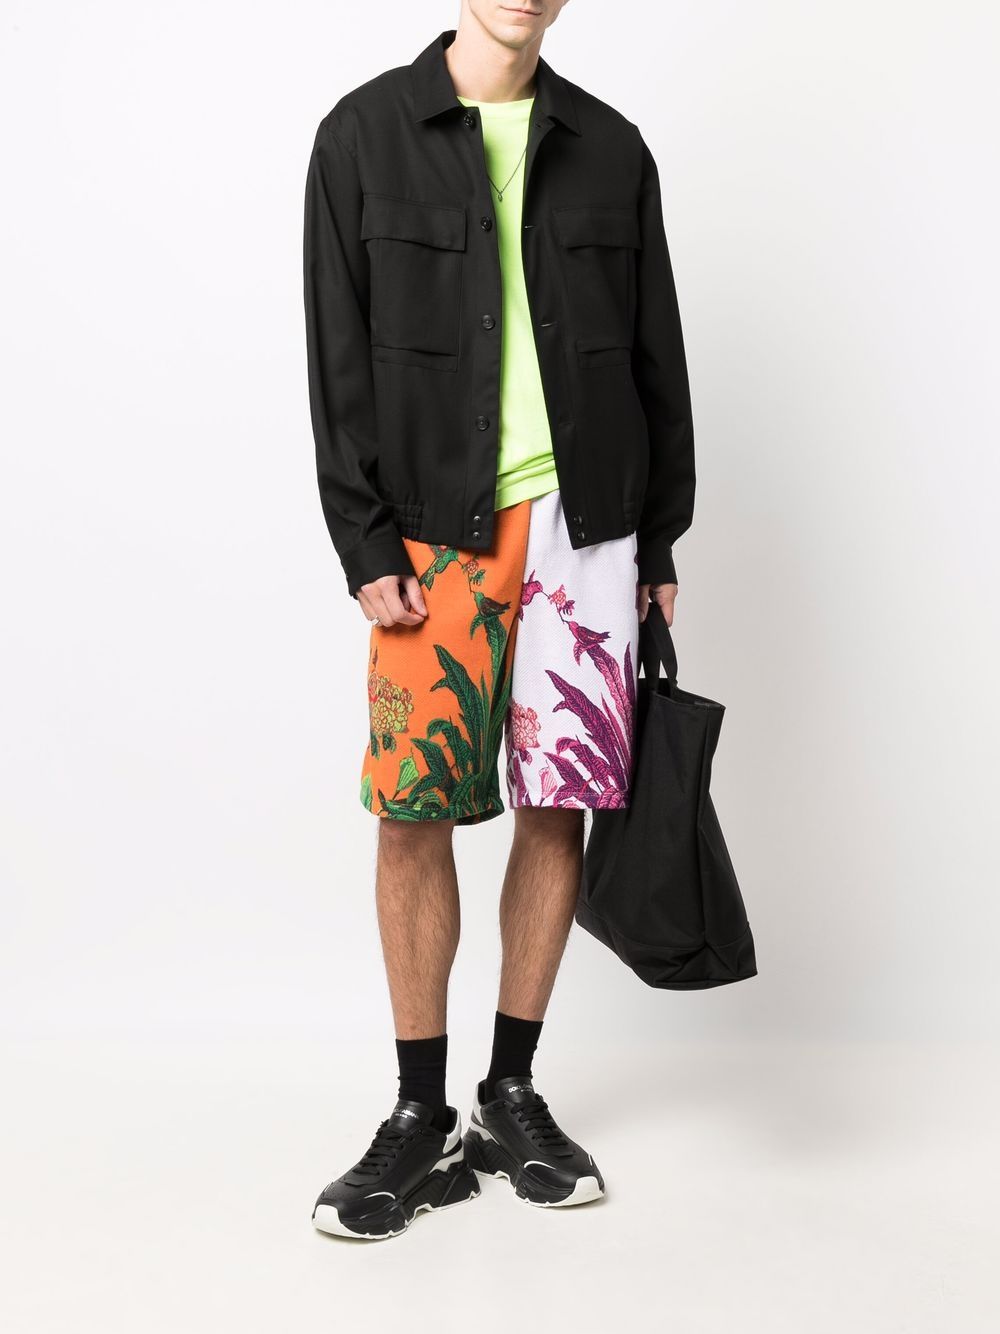 фото Philipp plein спортивные шорты с цветочным принтом